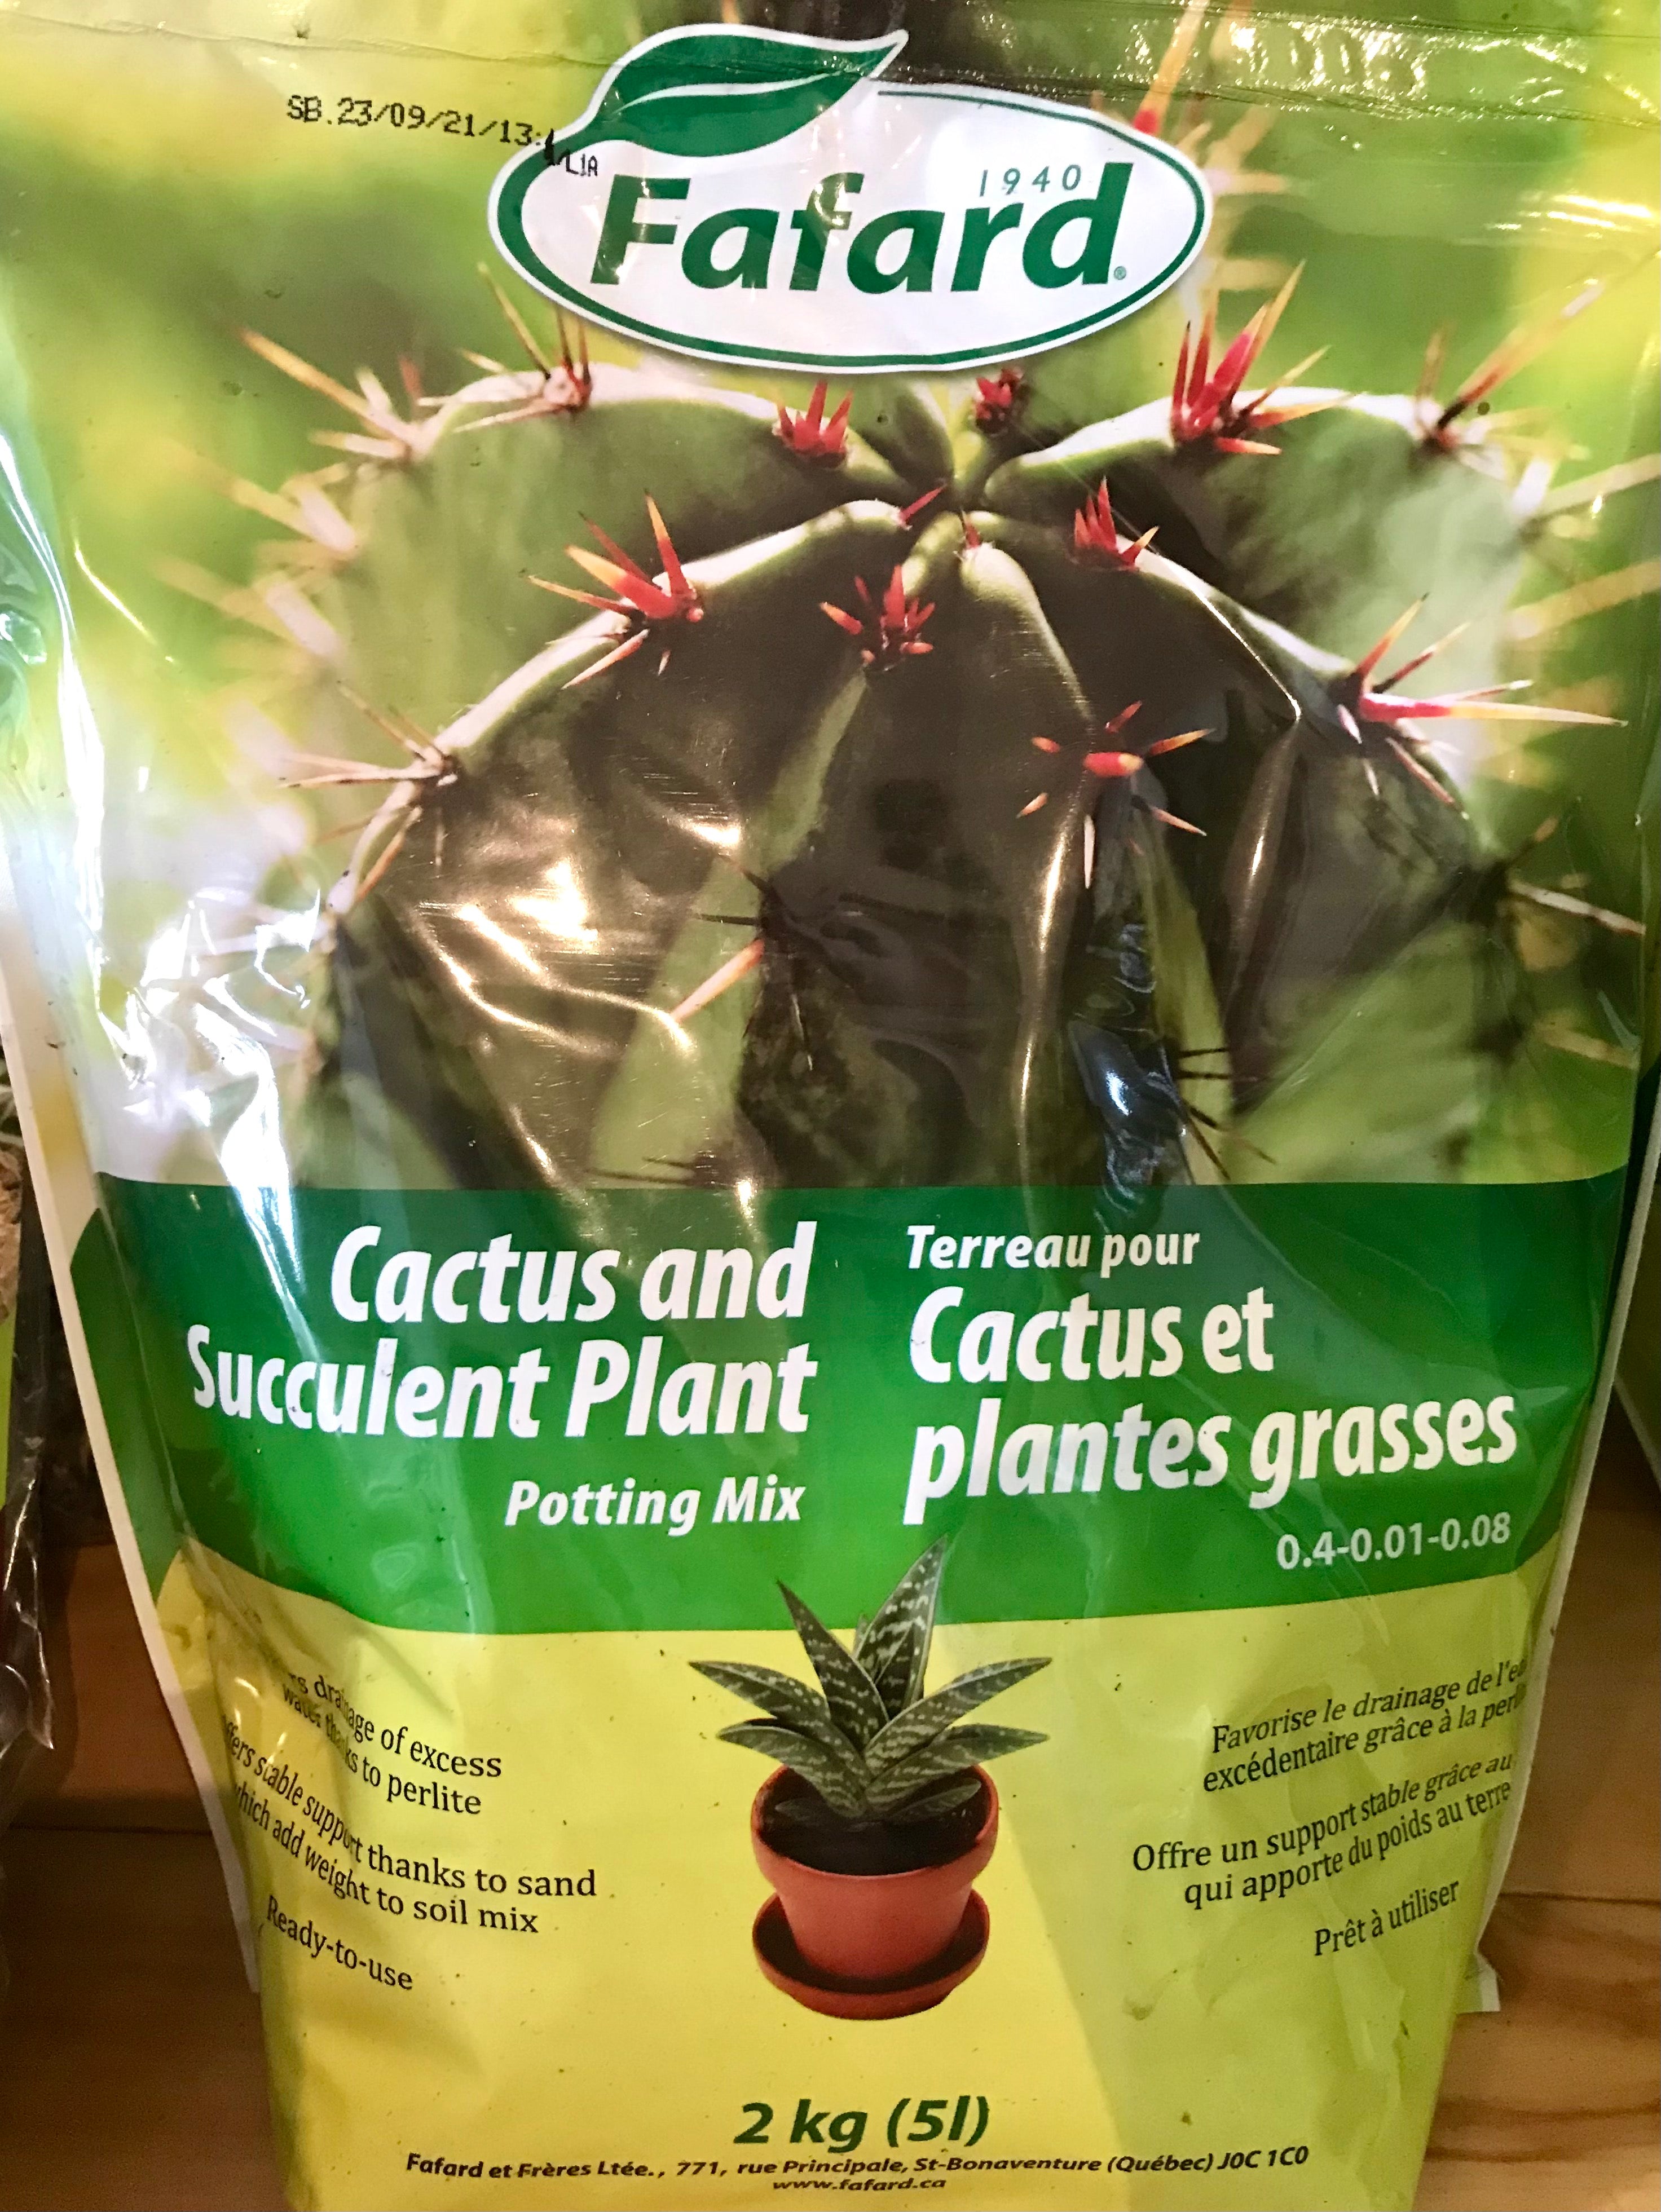 Terreau cactus et plantes grasses Fafard